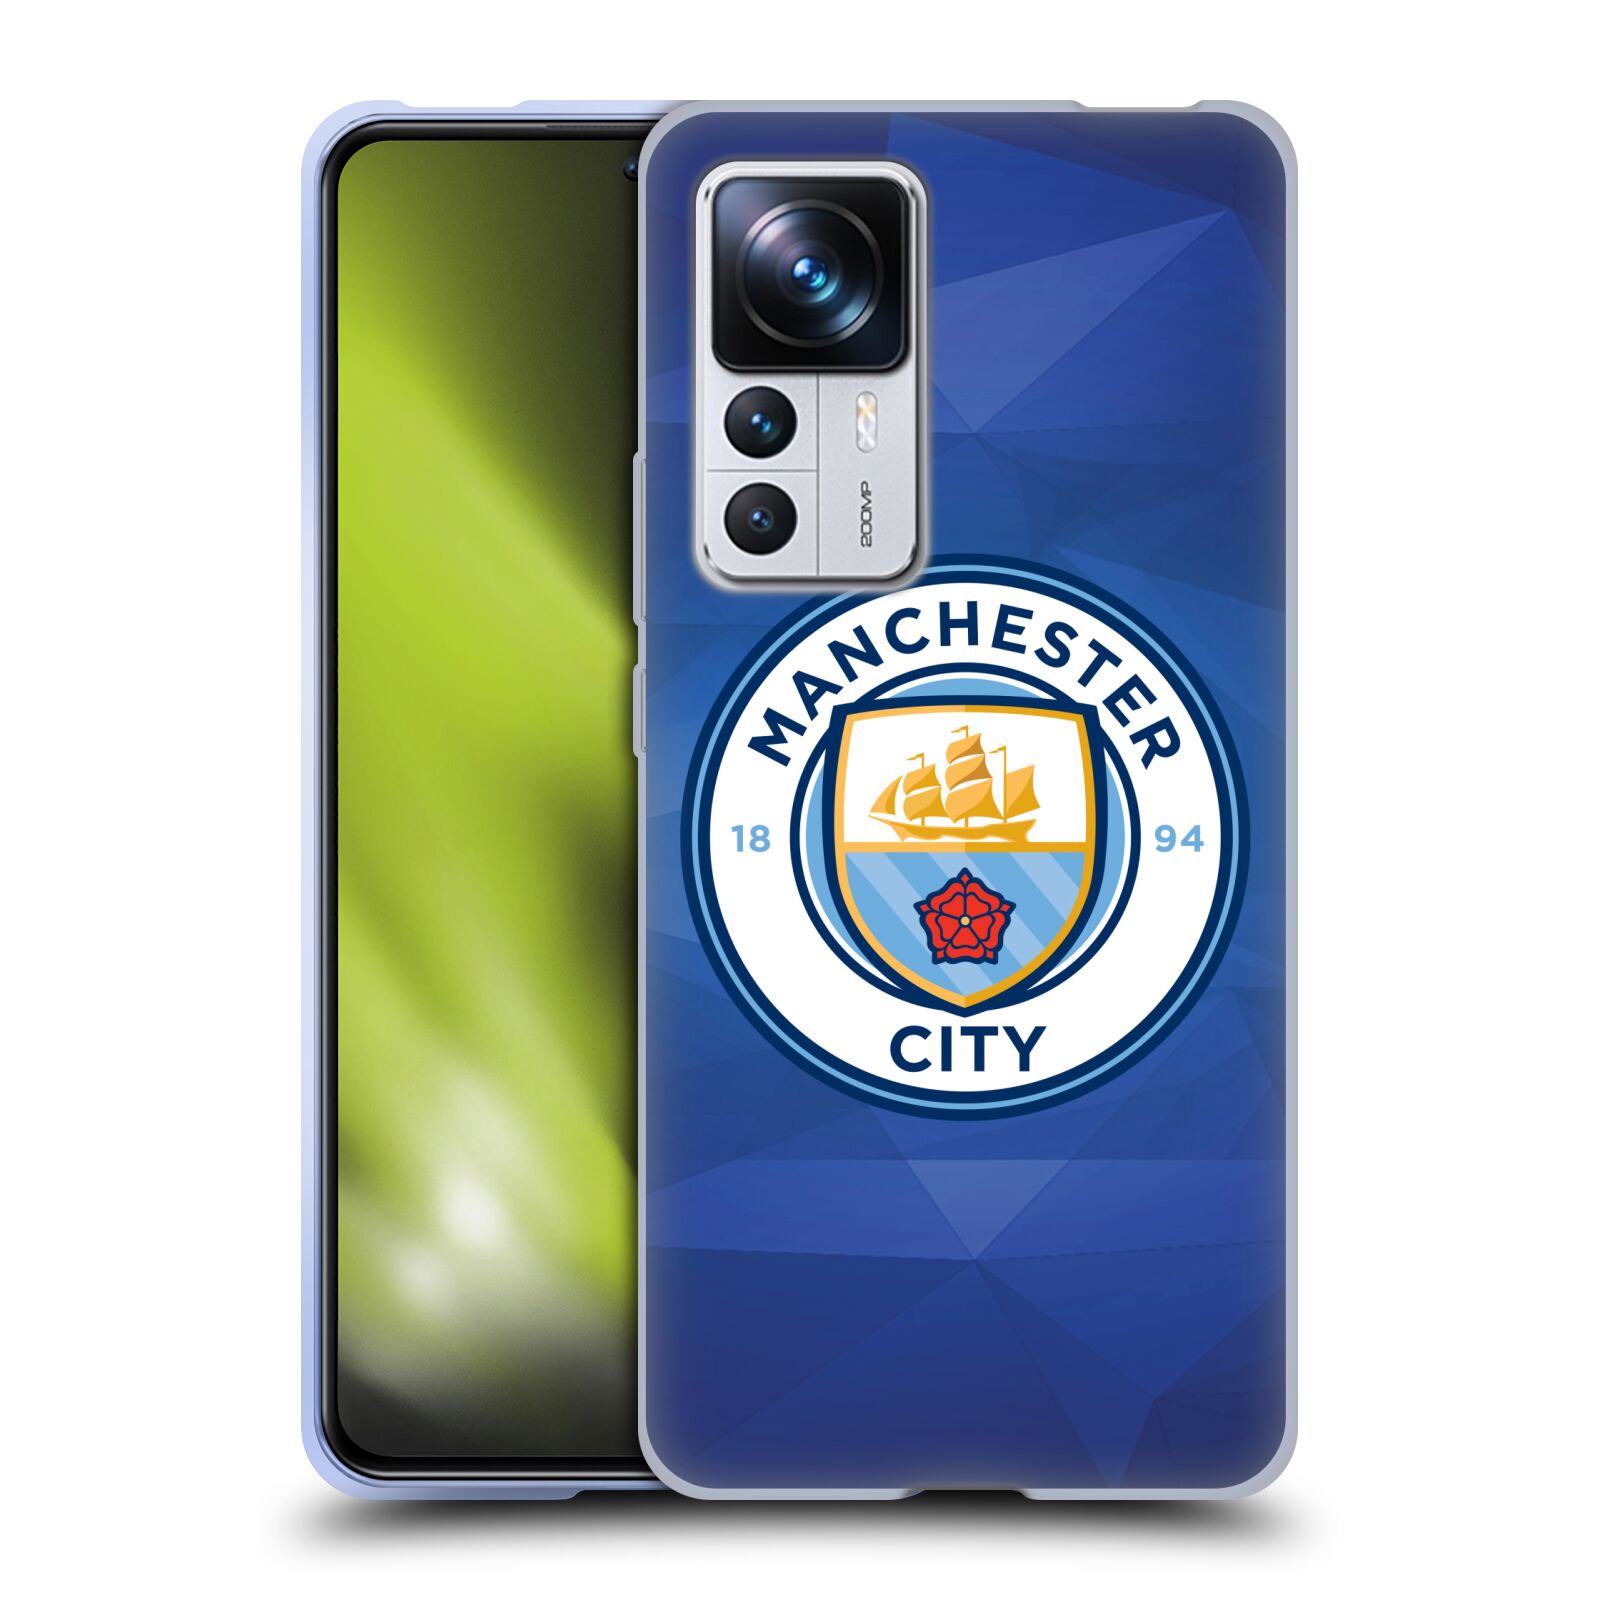 Silikonové pouzdro na mobil Xiaomi 12T / 12T Pro - Head Case - Manchester City FC - Modré nové logo (Silikonový kryt, obal, pouzdro na mobilní telefon Xiaomi 12T / 12T Pro s motivem Manchester City FC - Modré nové logo)